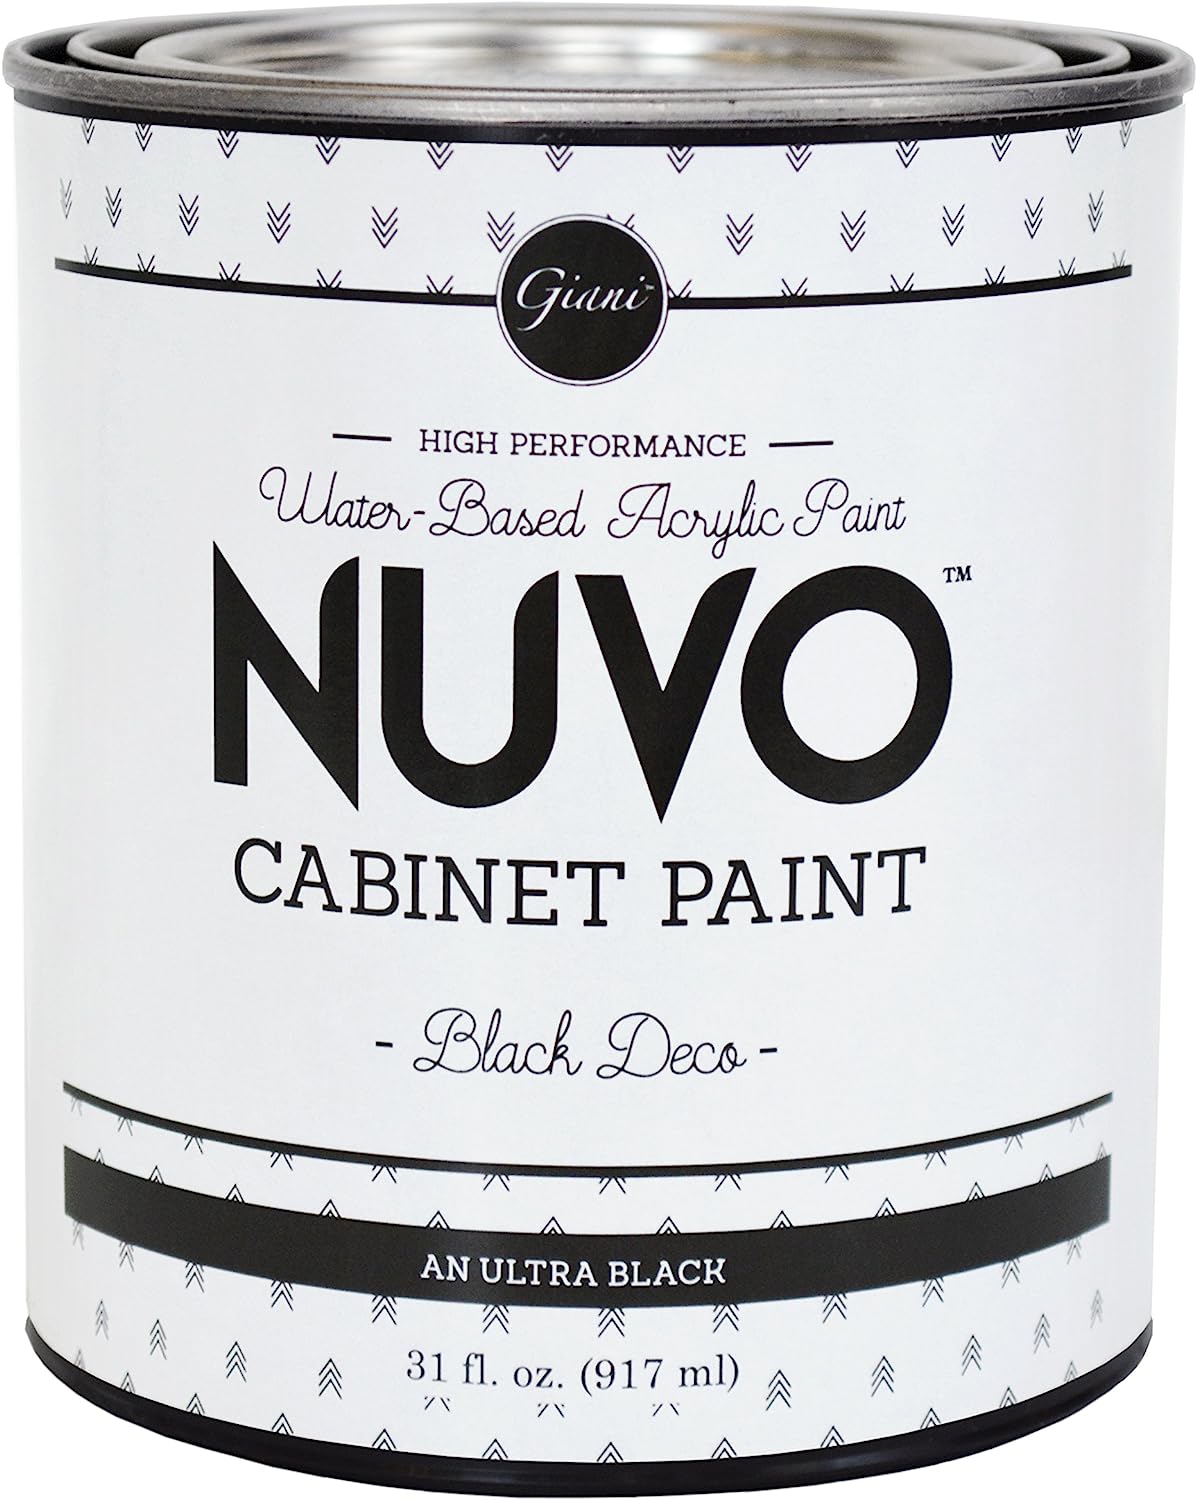 Nuvo Cabinet Paint, Black Deco (Quart)